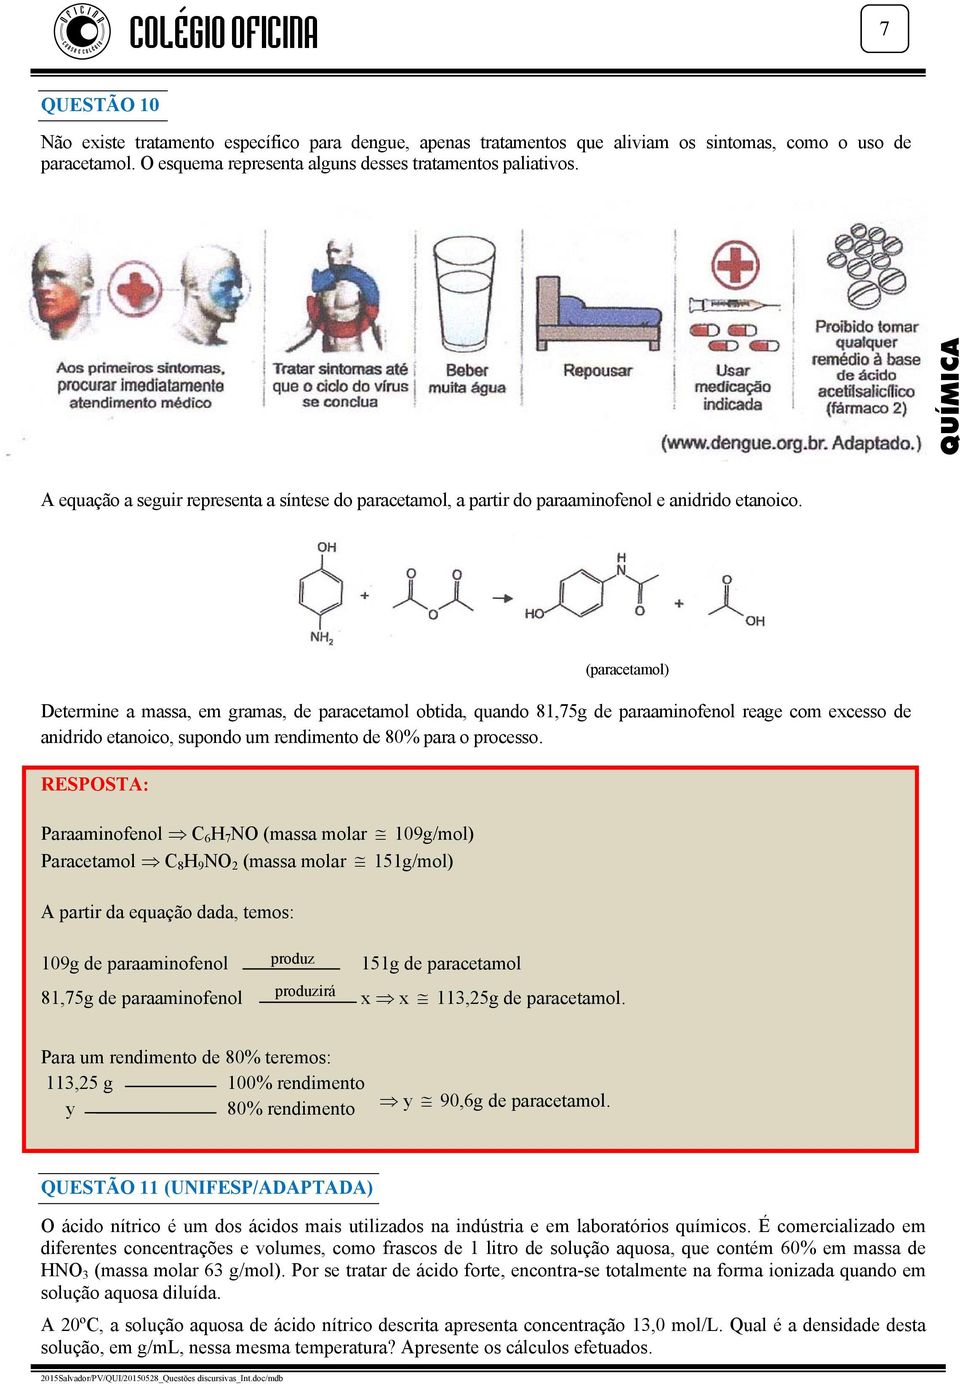 (paracetamol) Determine a massa, em gramas, de paracetamol obtida, quando 81,75g de paraaminofenol reage com excesso de anidrido etanoico, supondo um rendimento de 80% para o processo.